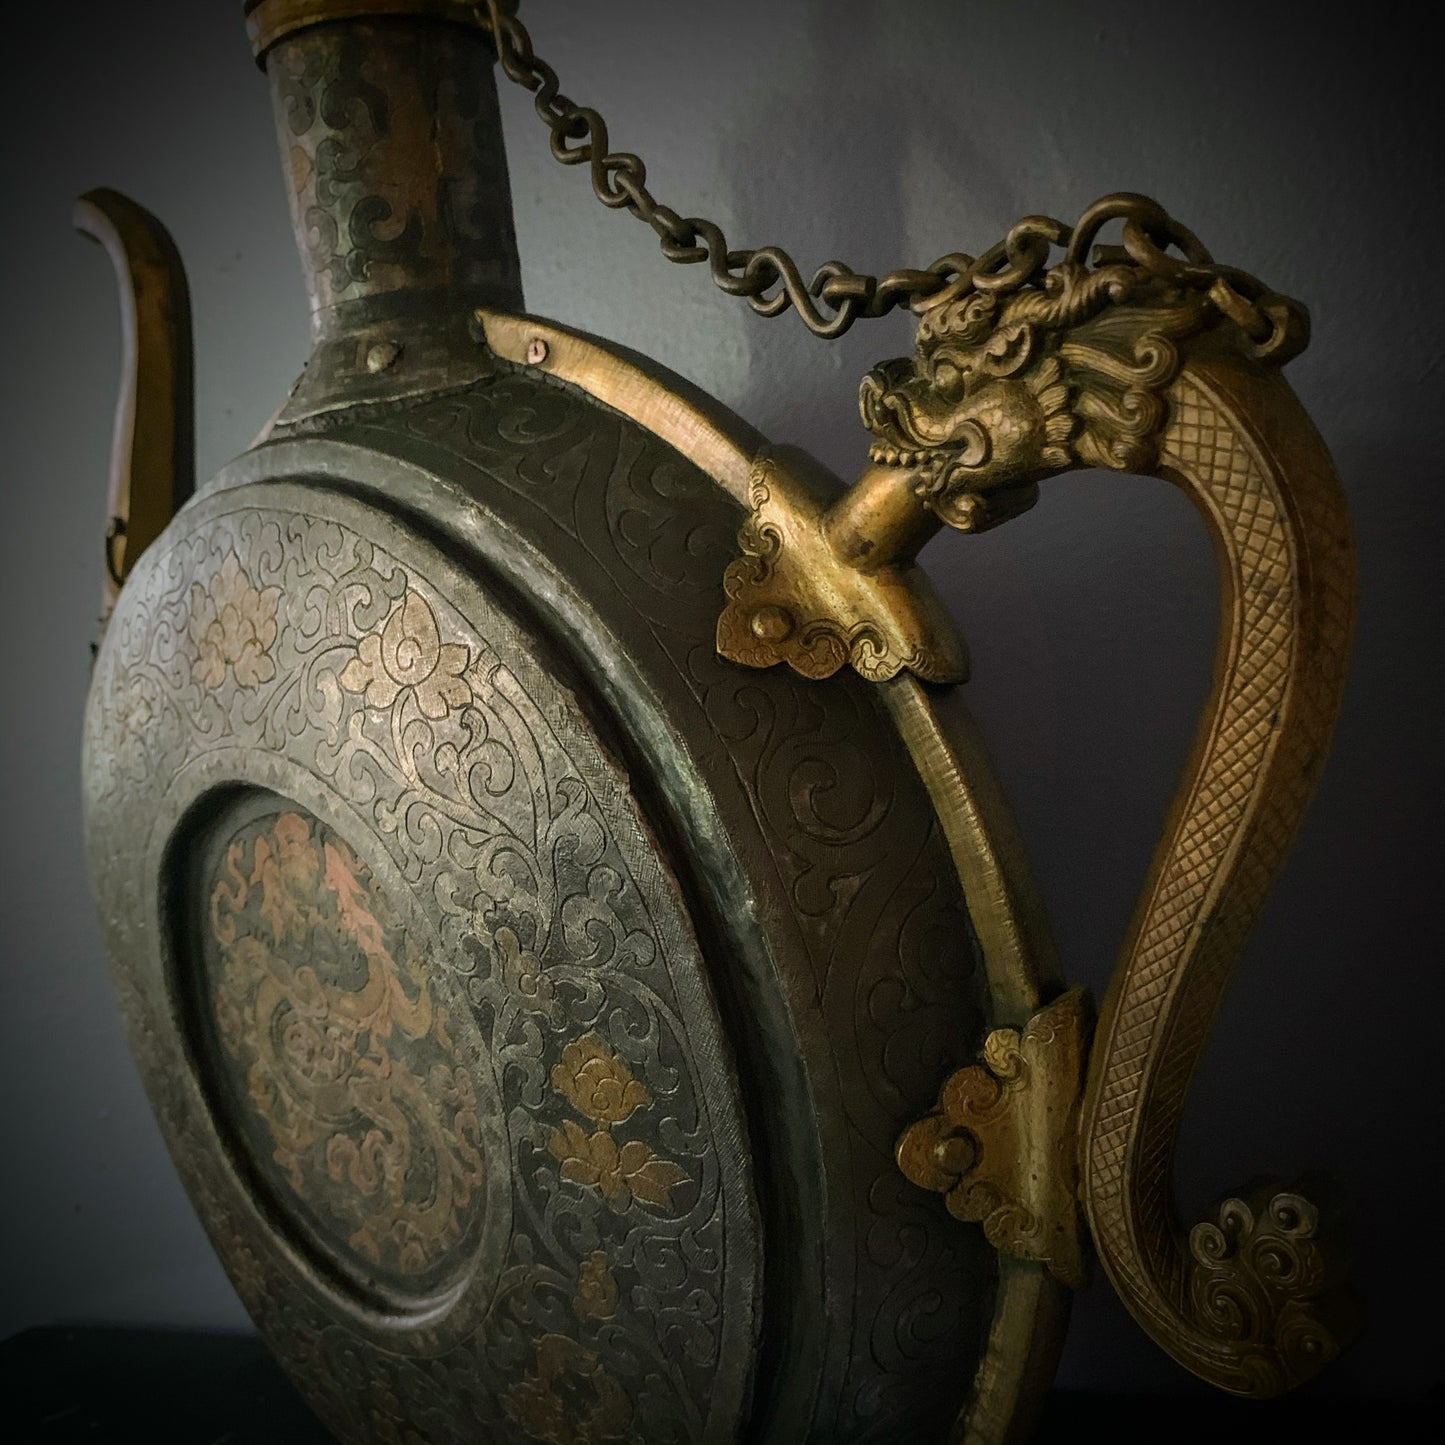 An antique Tibetan beer pitcher